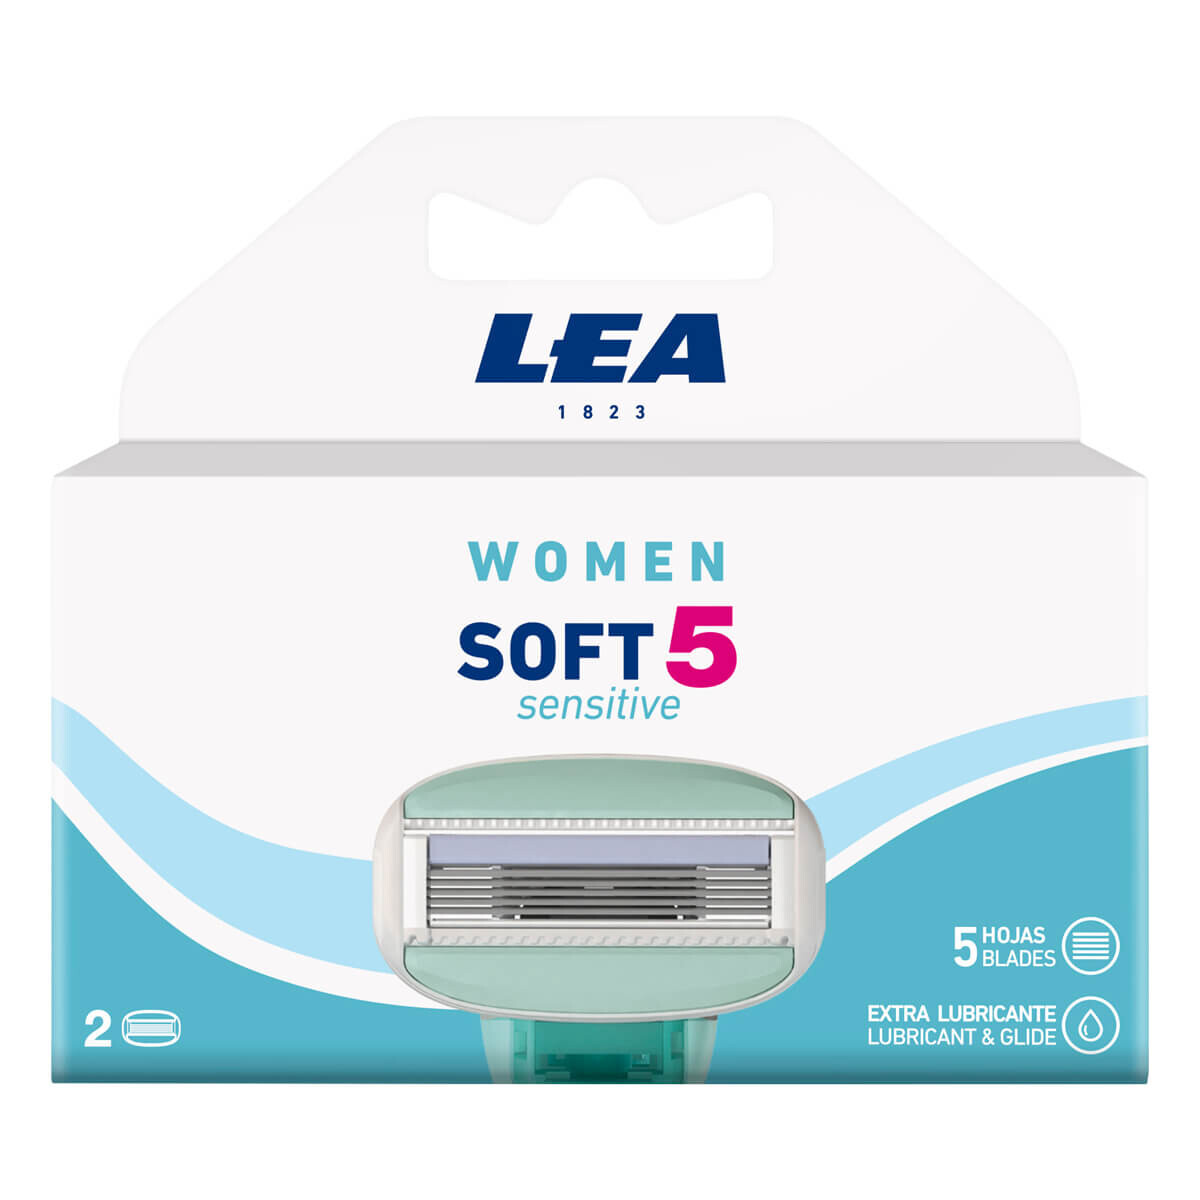 Billede af LEA Soft 5 Sensitive, Pakke med 2 ekstra barberblade (5 klinger), Women